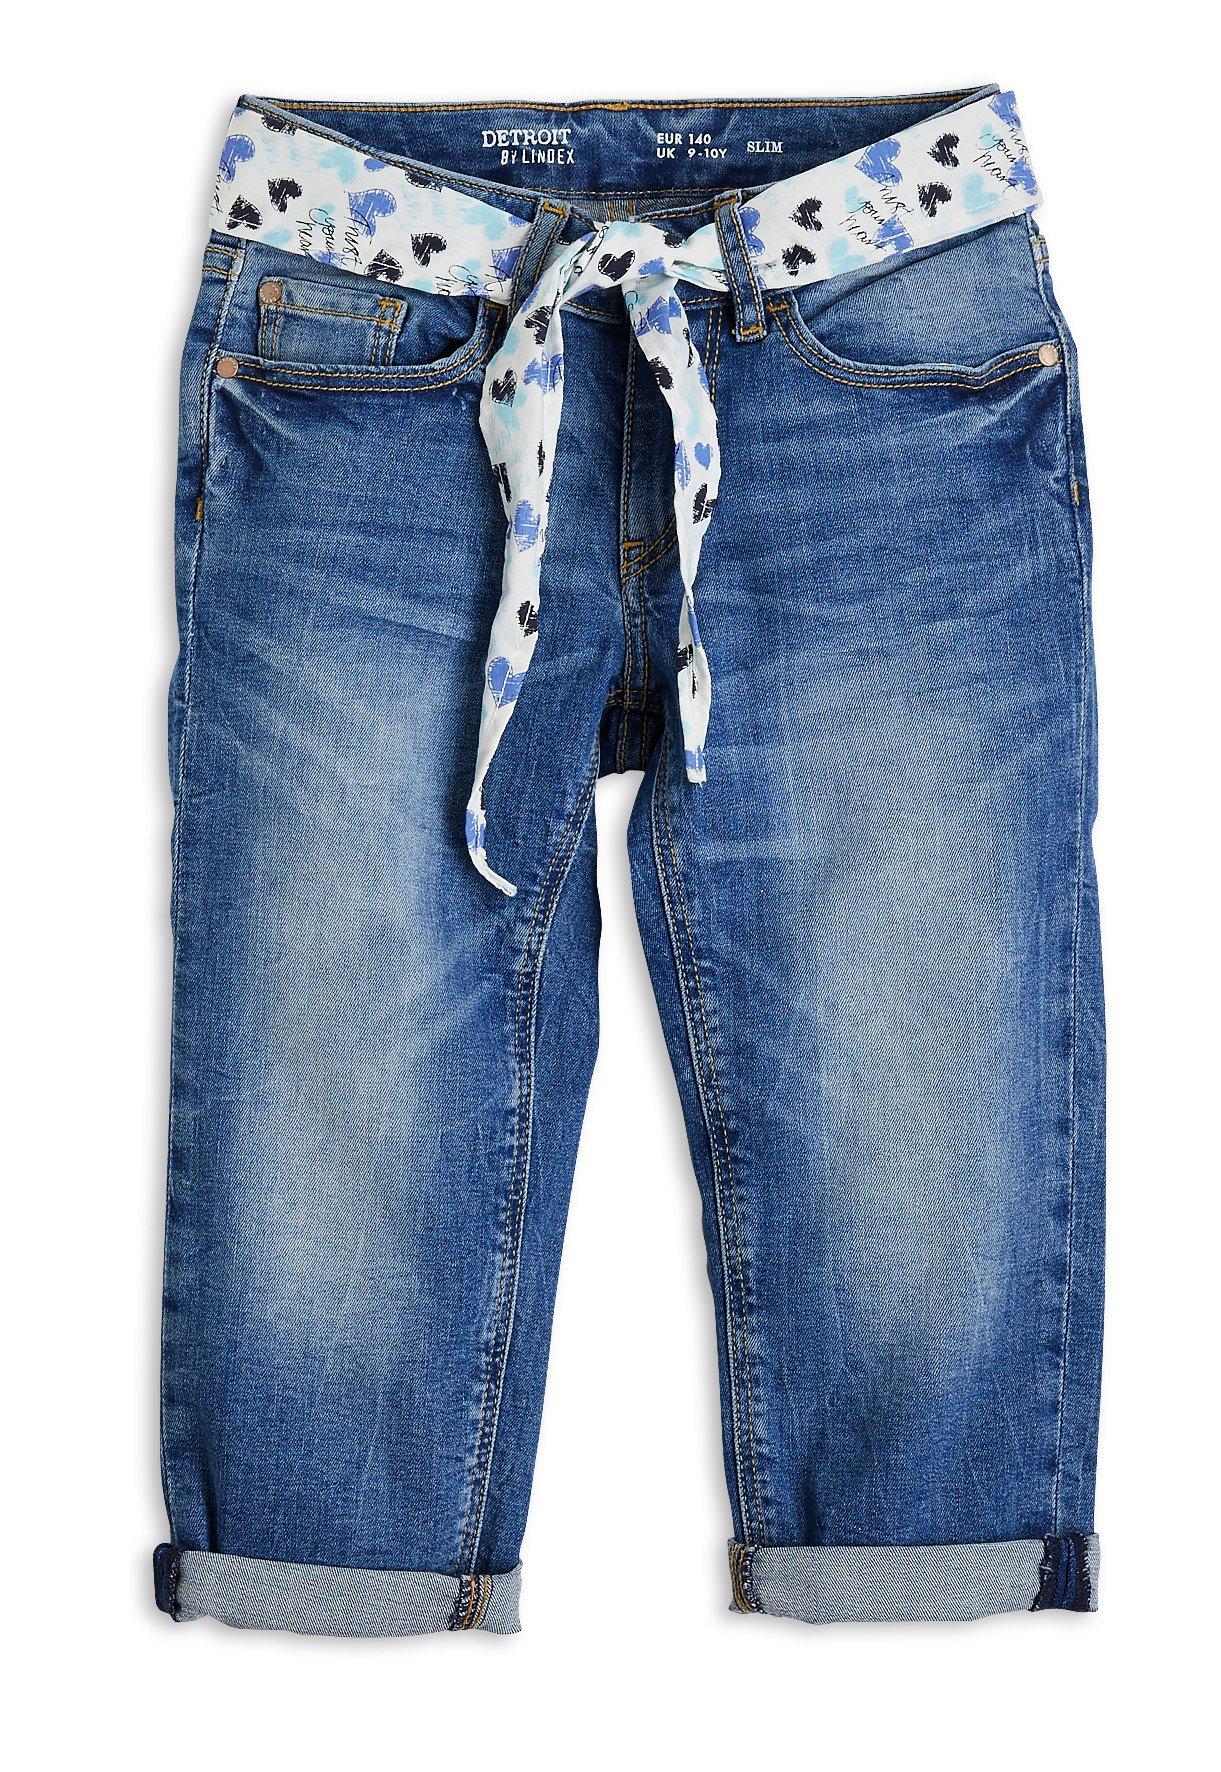 capri jeans uk